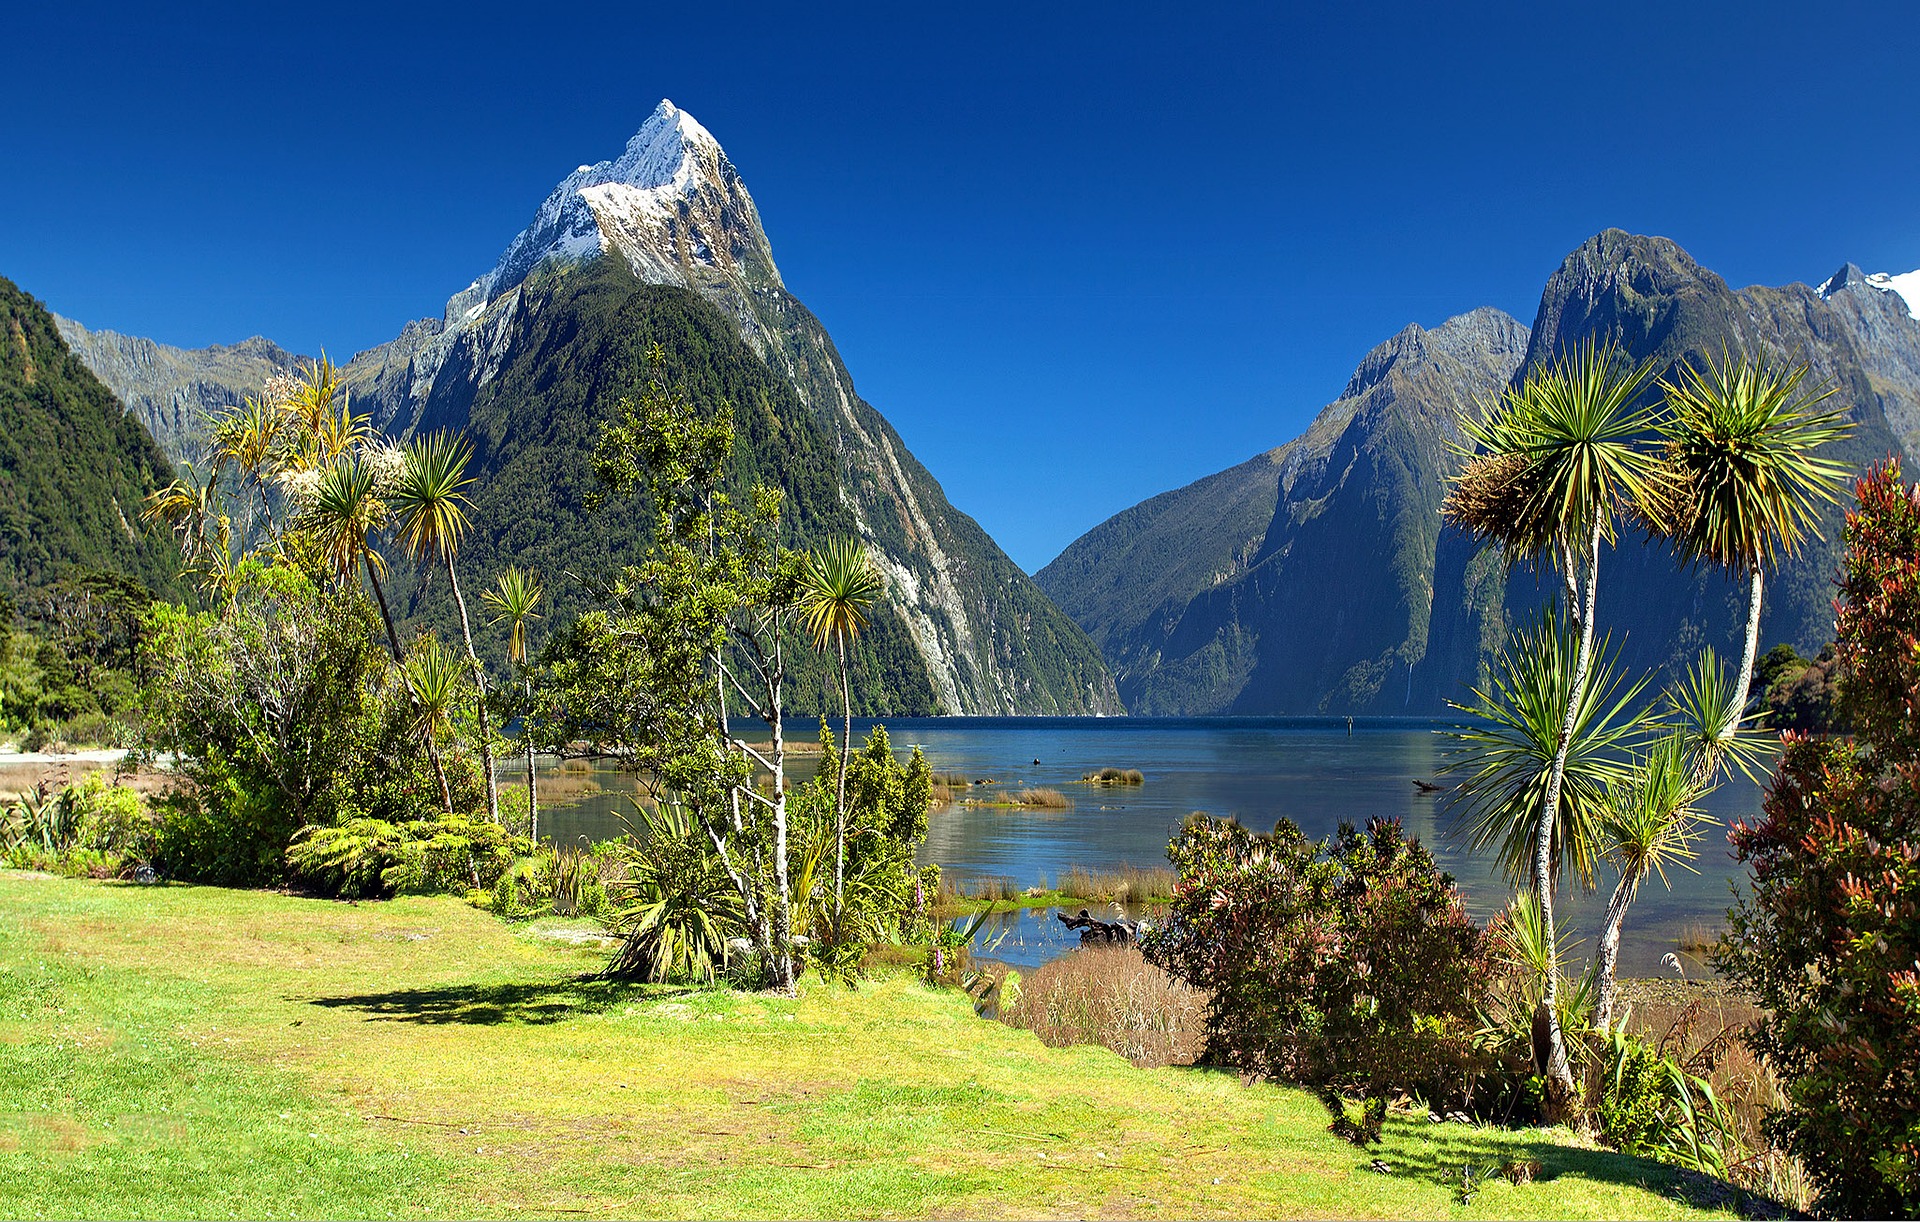 ملفورد ساوند اعجوبة كوكب الارض الطبيعية في نيوزلندا , نصائح و معلومات سياحية مهمة